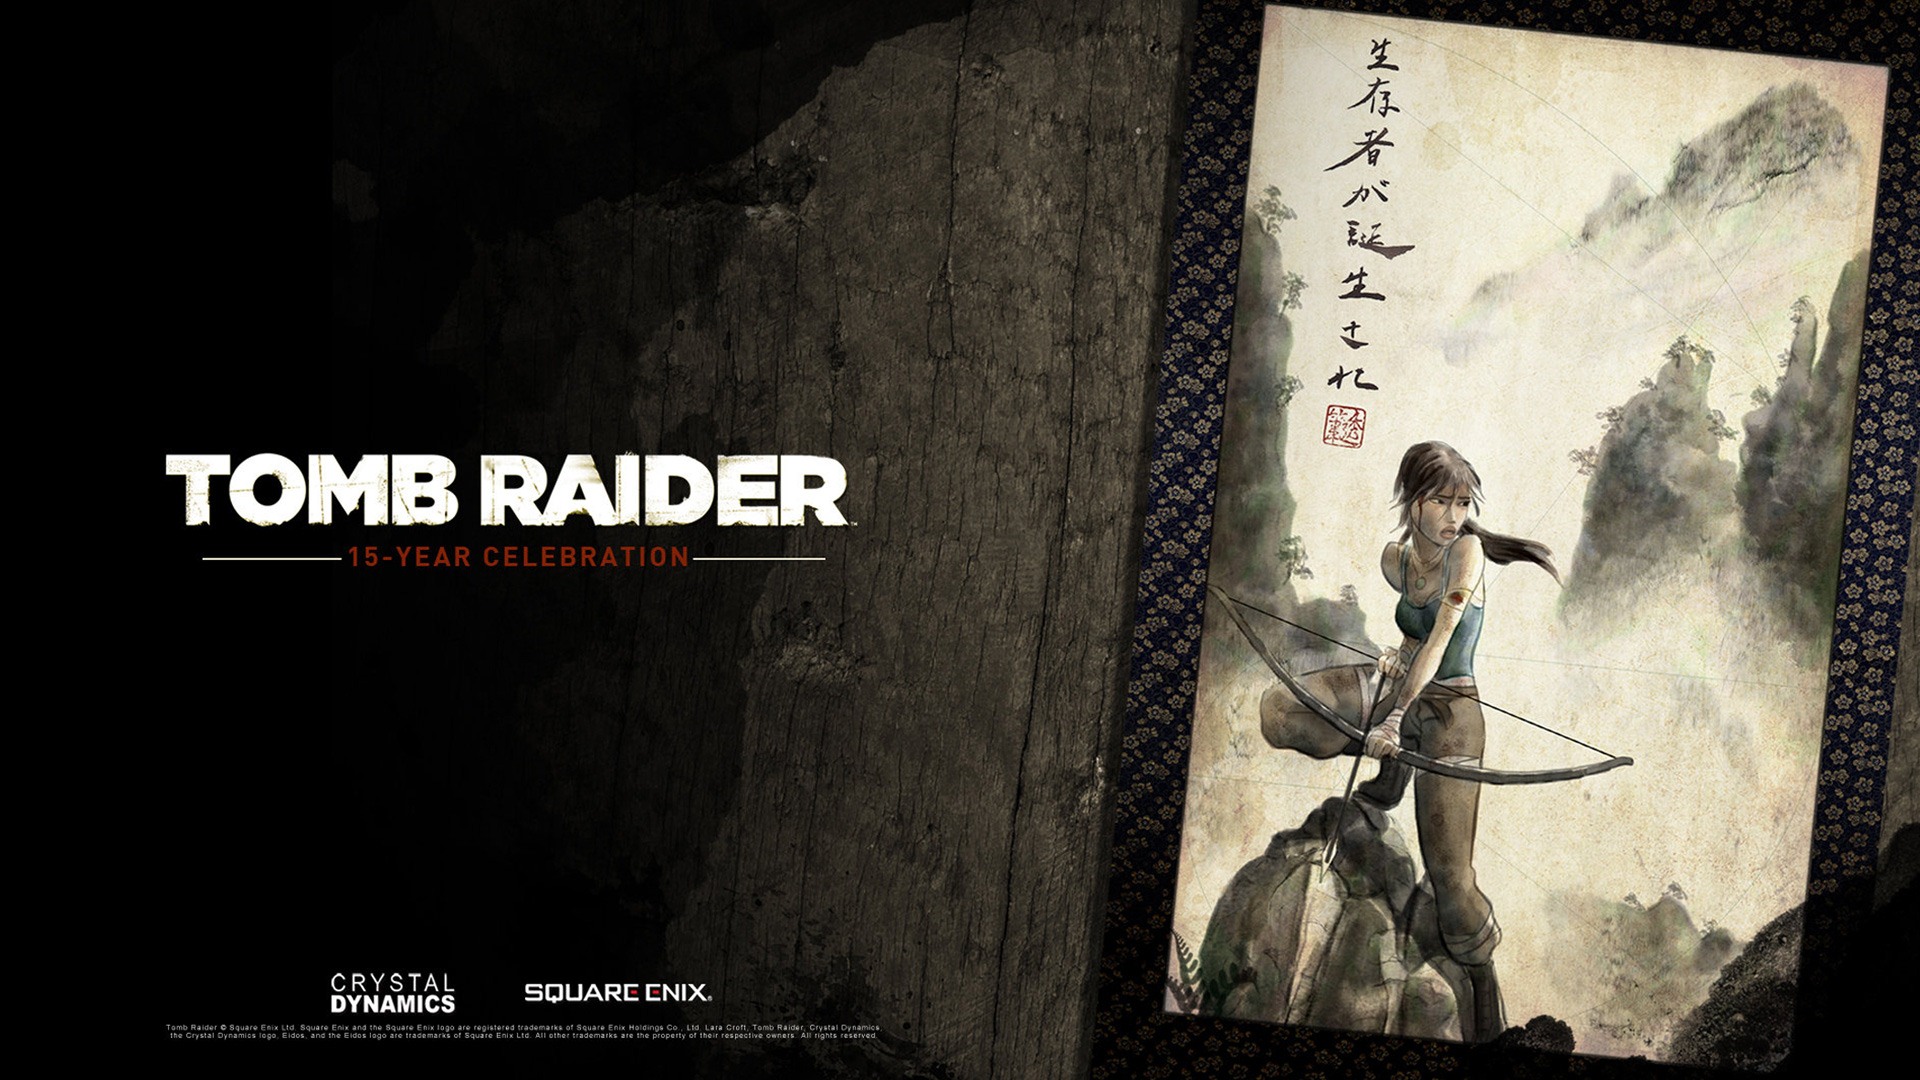 Tomb Raider 15-Year Celebration 古墓丽影15周年纪念版 高清壁纸14 - 1920x1080